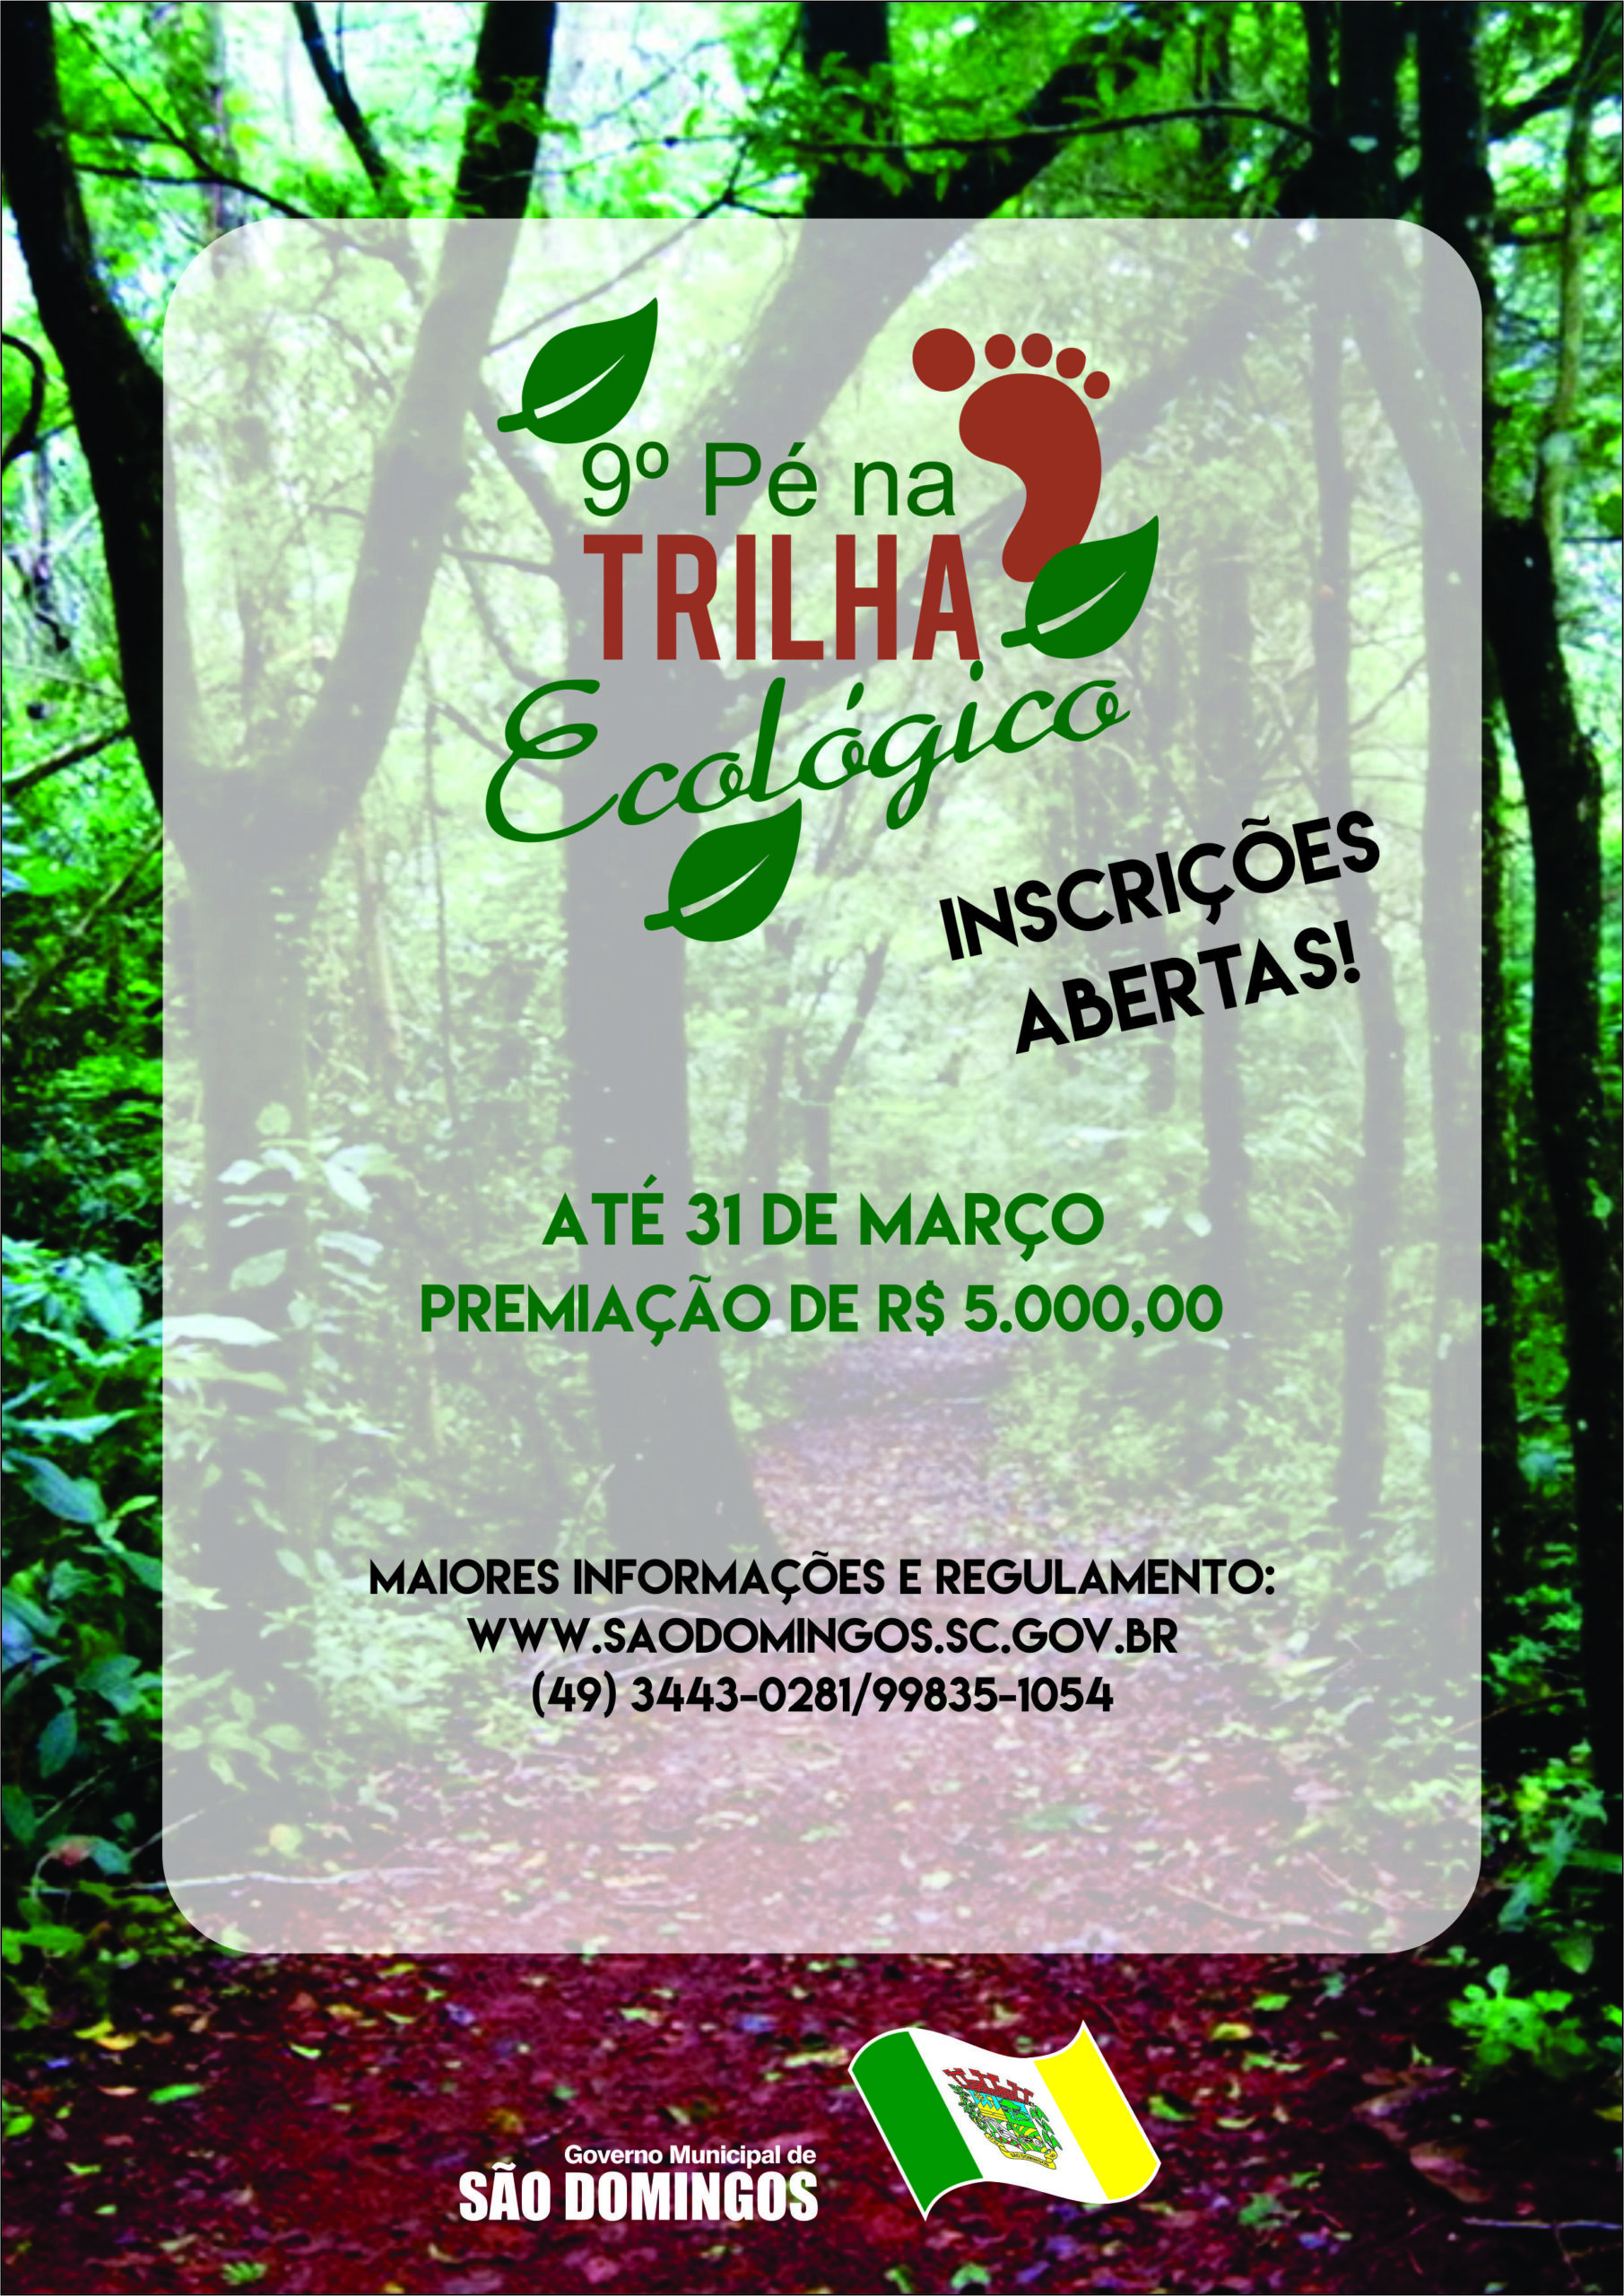 You are currently viewing Inscrições abertas para o 9º Pé na Trilha Ecológico de São Domingos